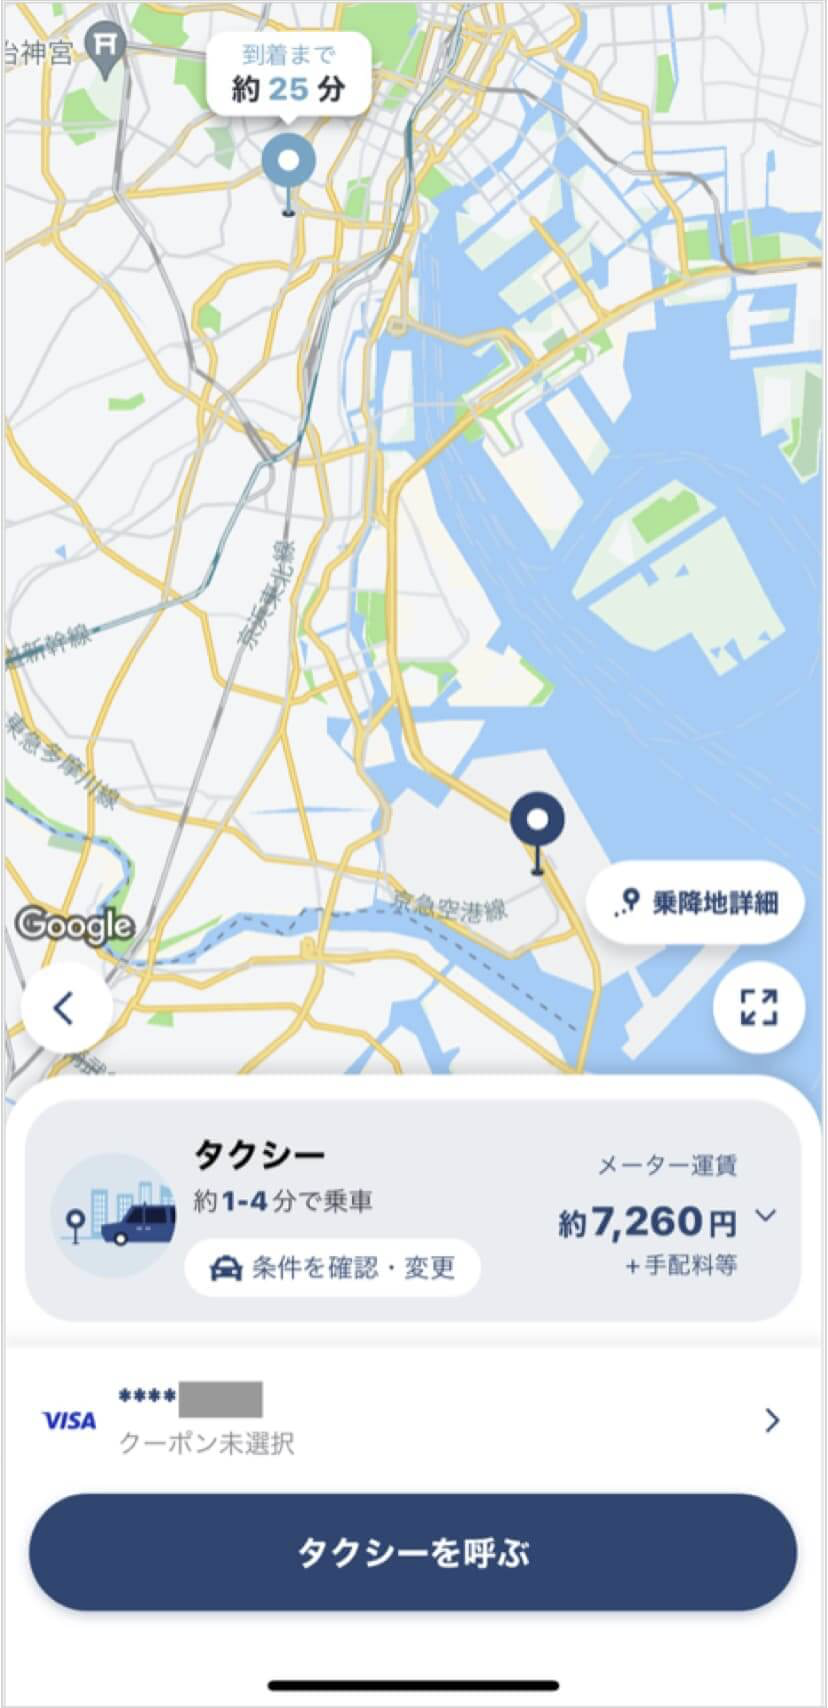 羽田空港から麻布十番までのタクシー料金・所要時間まとめ